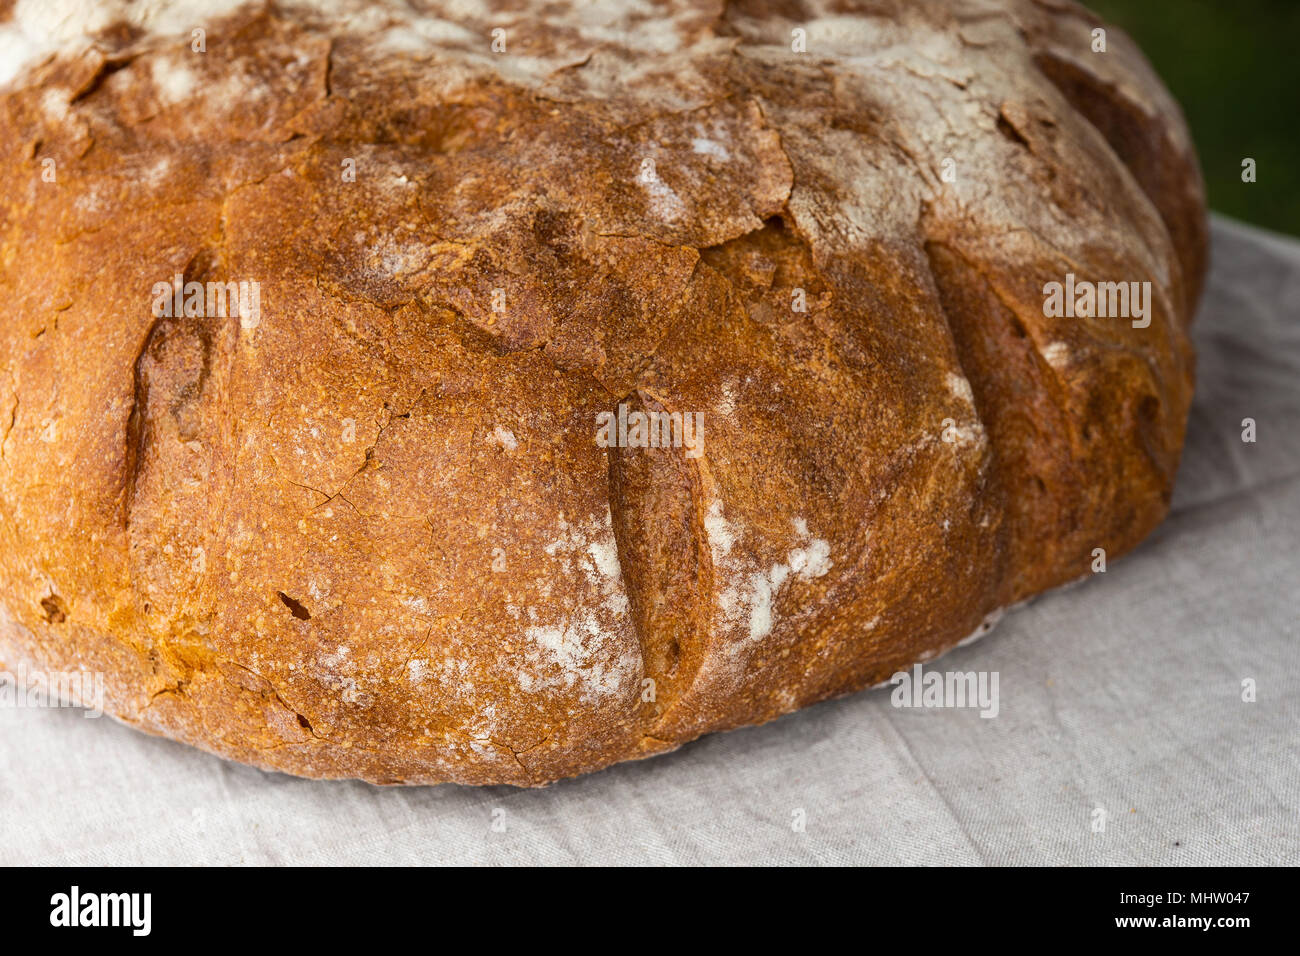 Miche de pain frais avec une croûte brune d'. Le linge blanc chiffon sous le pain Banque D'Images